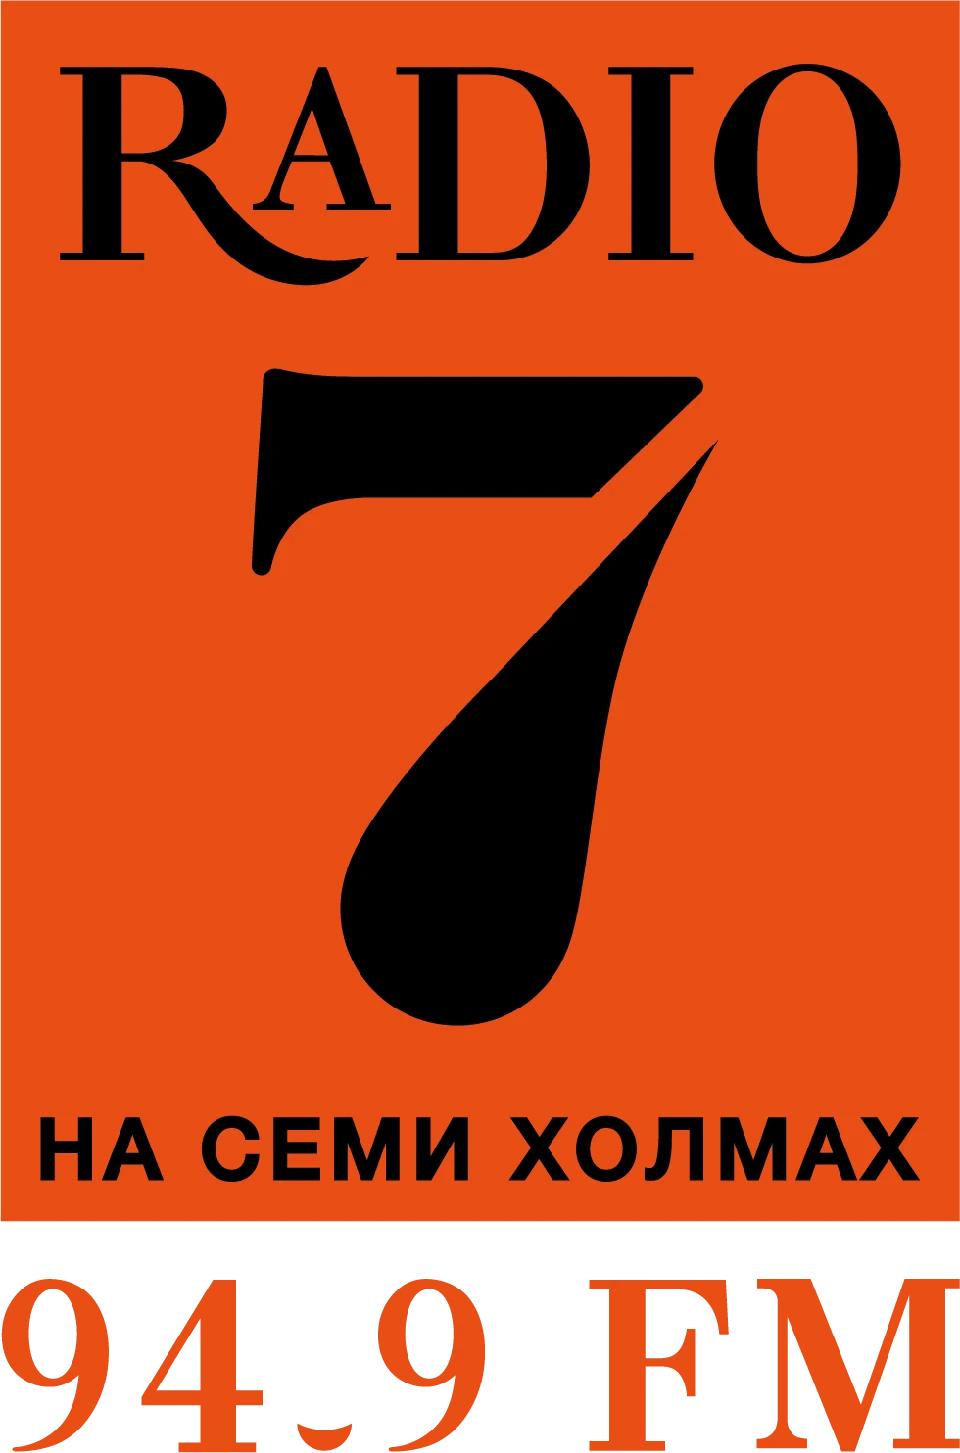 Радио 7 2. Радио 7. Радио 7 логотип. Радио 7 на семи холмах. Логотип радиостанции на 7 холмах.